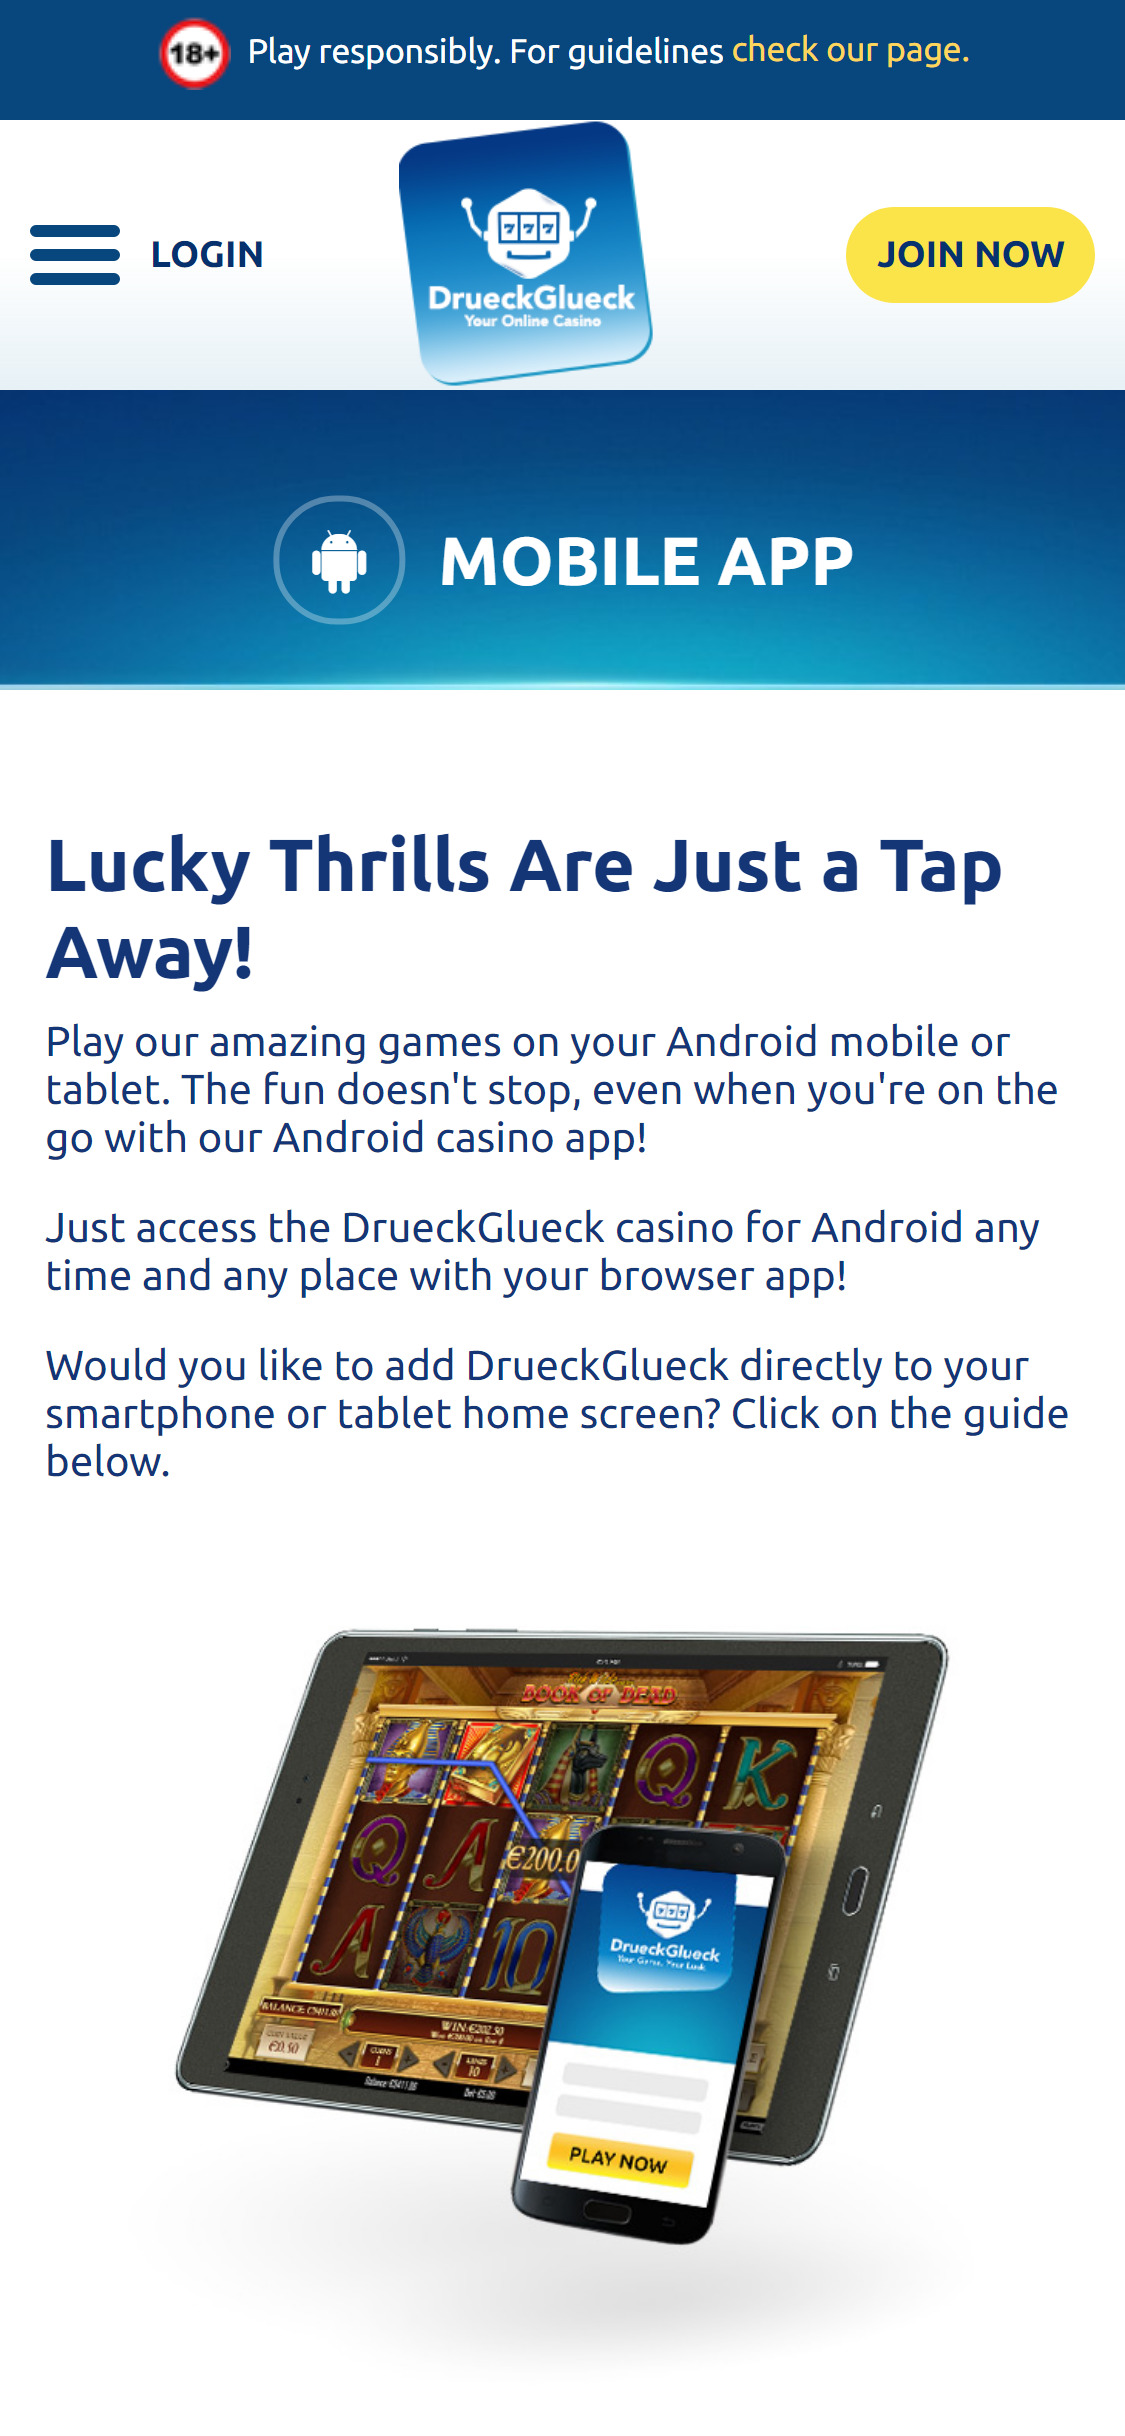 Drueck Glueck Casino Mobile App Review